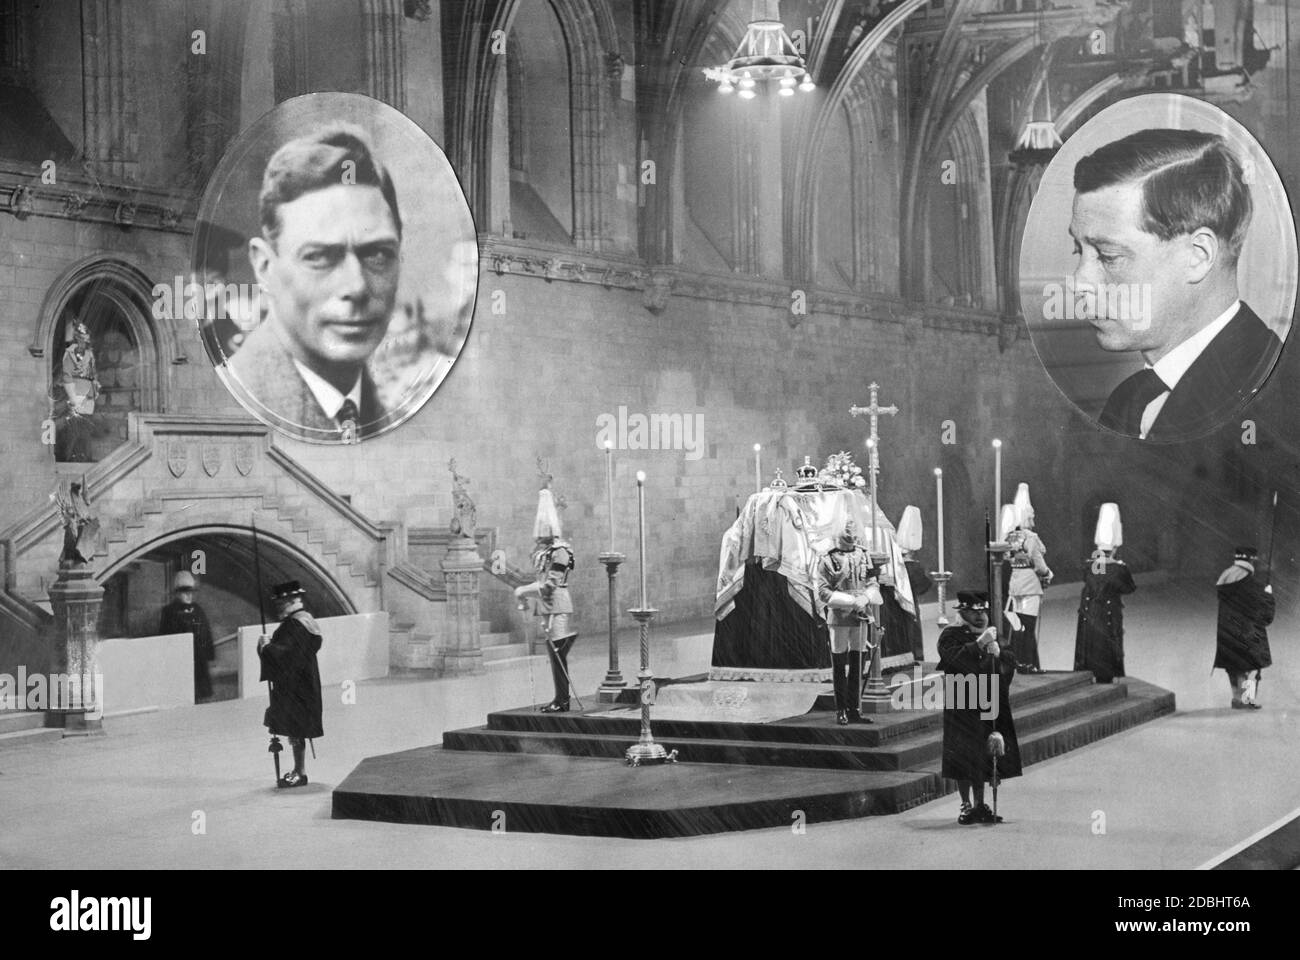 Posa in stato della bara incoronata e spaventa di Re Giorgio V all'Abbazia di Westminster dopo la sua morte il 20 gennaio 1936, con ritratti di Edoardo VIII (a destra) e del Principe Alberto (a sinistra, da dicembre dopo le dimissioni del fratello maggiore, Re Giorgio VI). Foto Stock